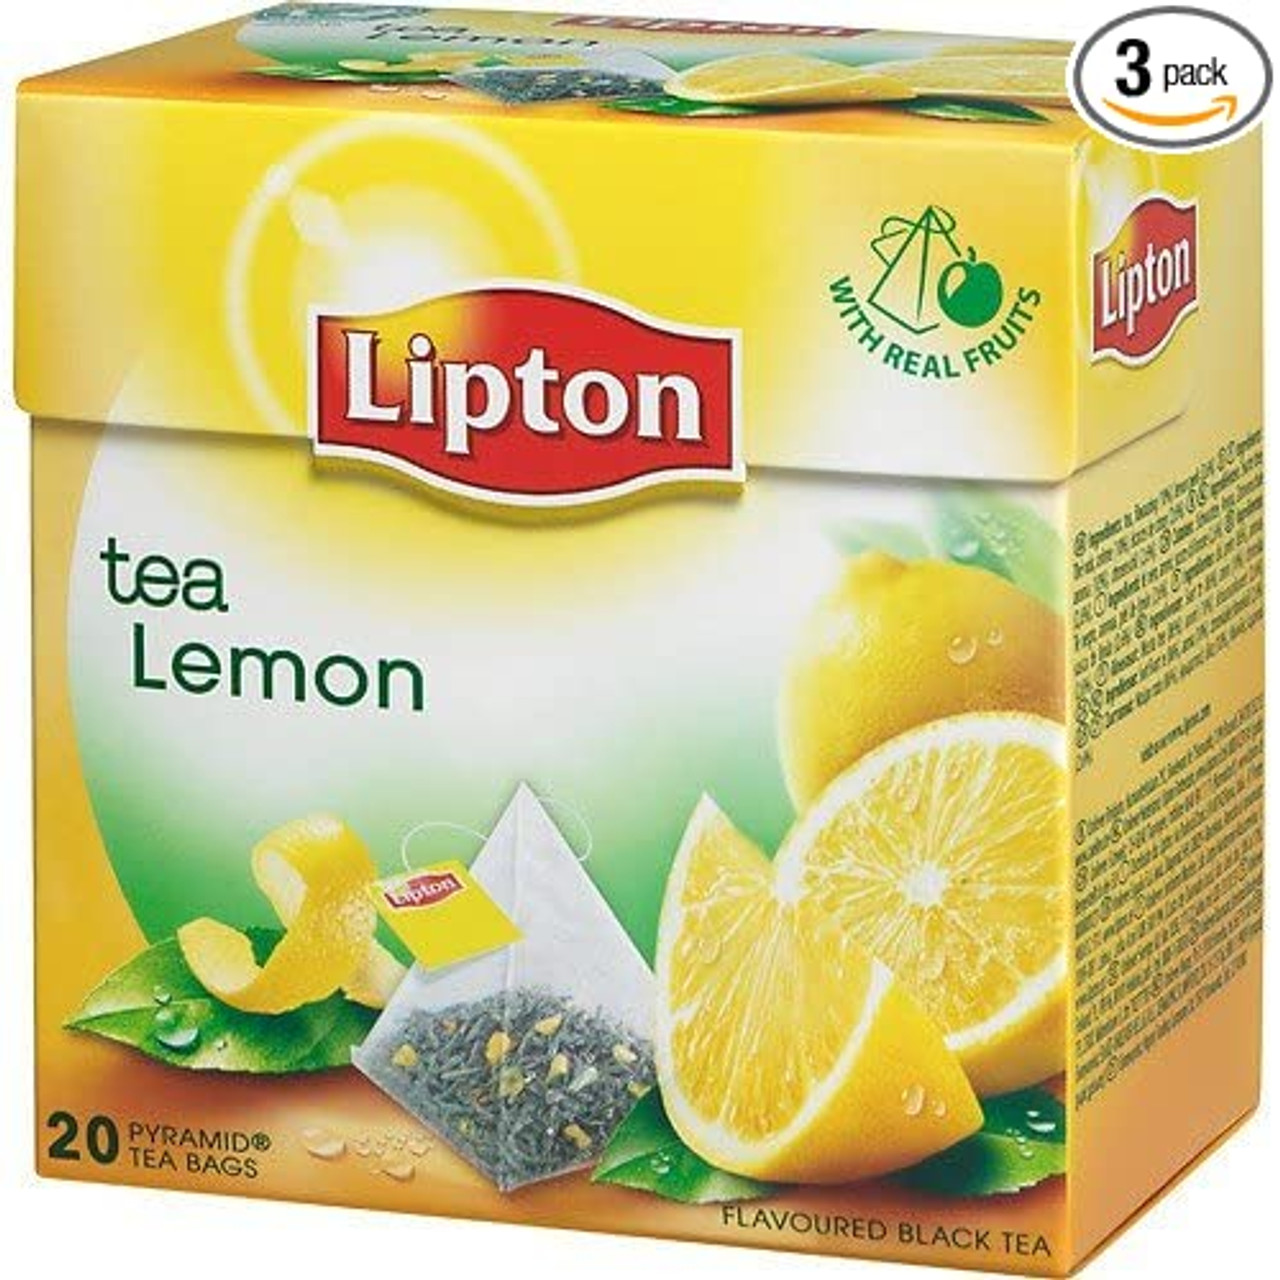 Lipton Black Tea Review | Tea bag | CHOICE